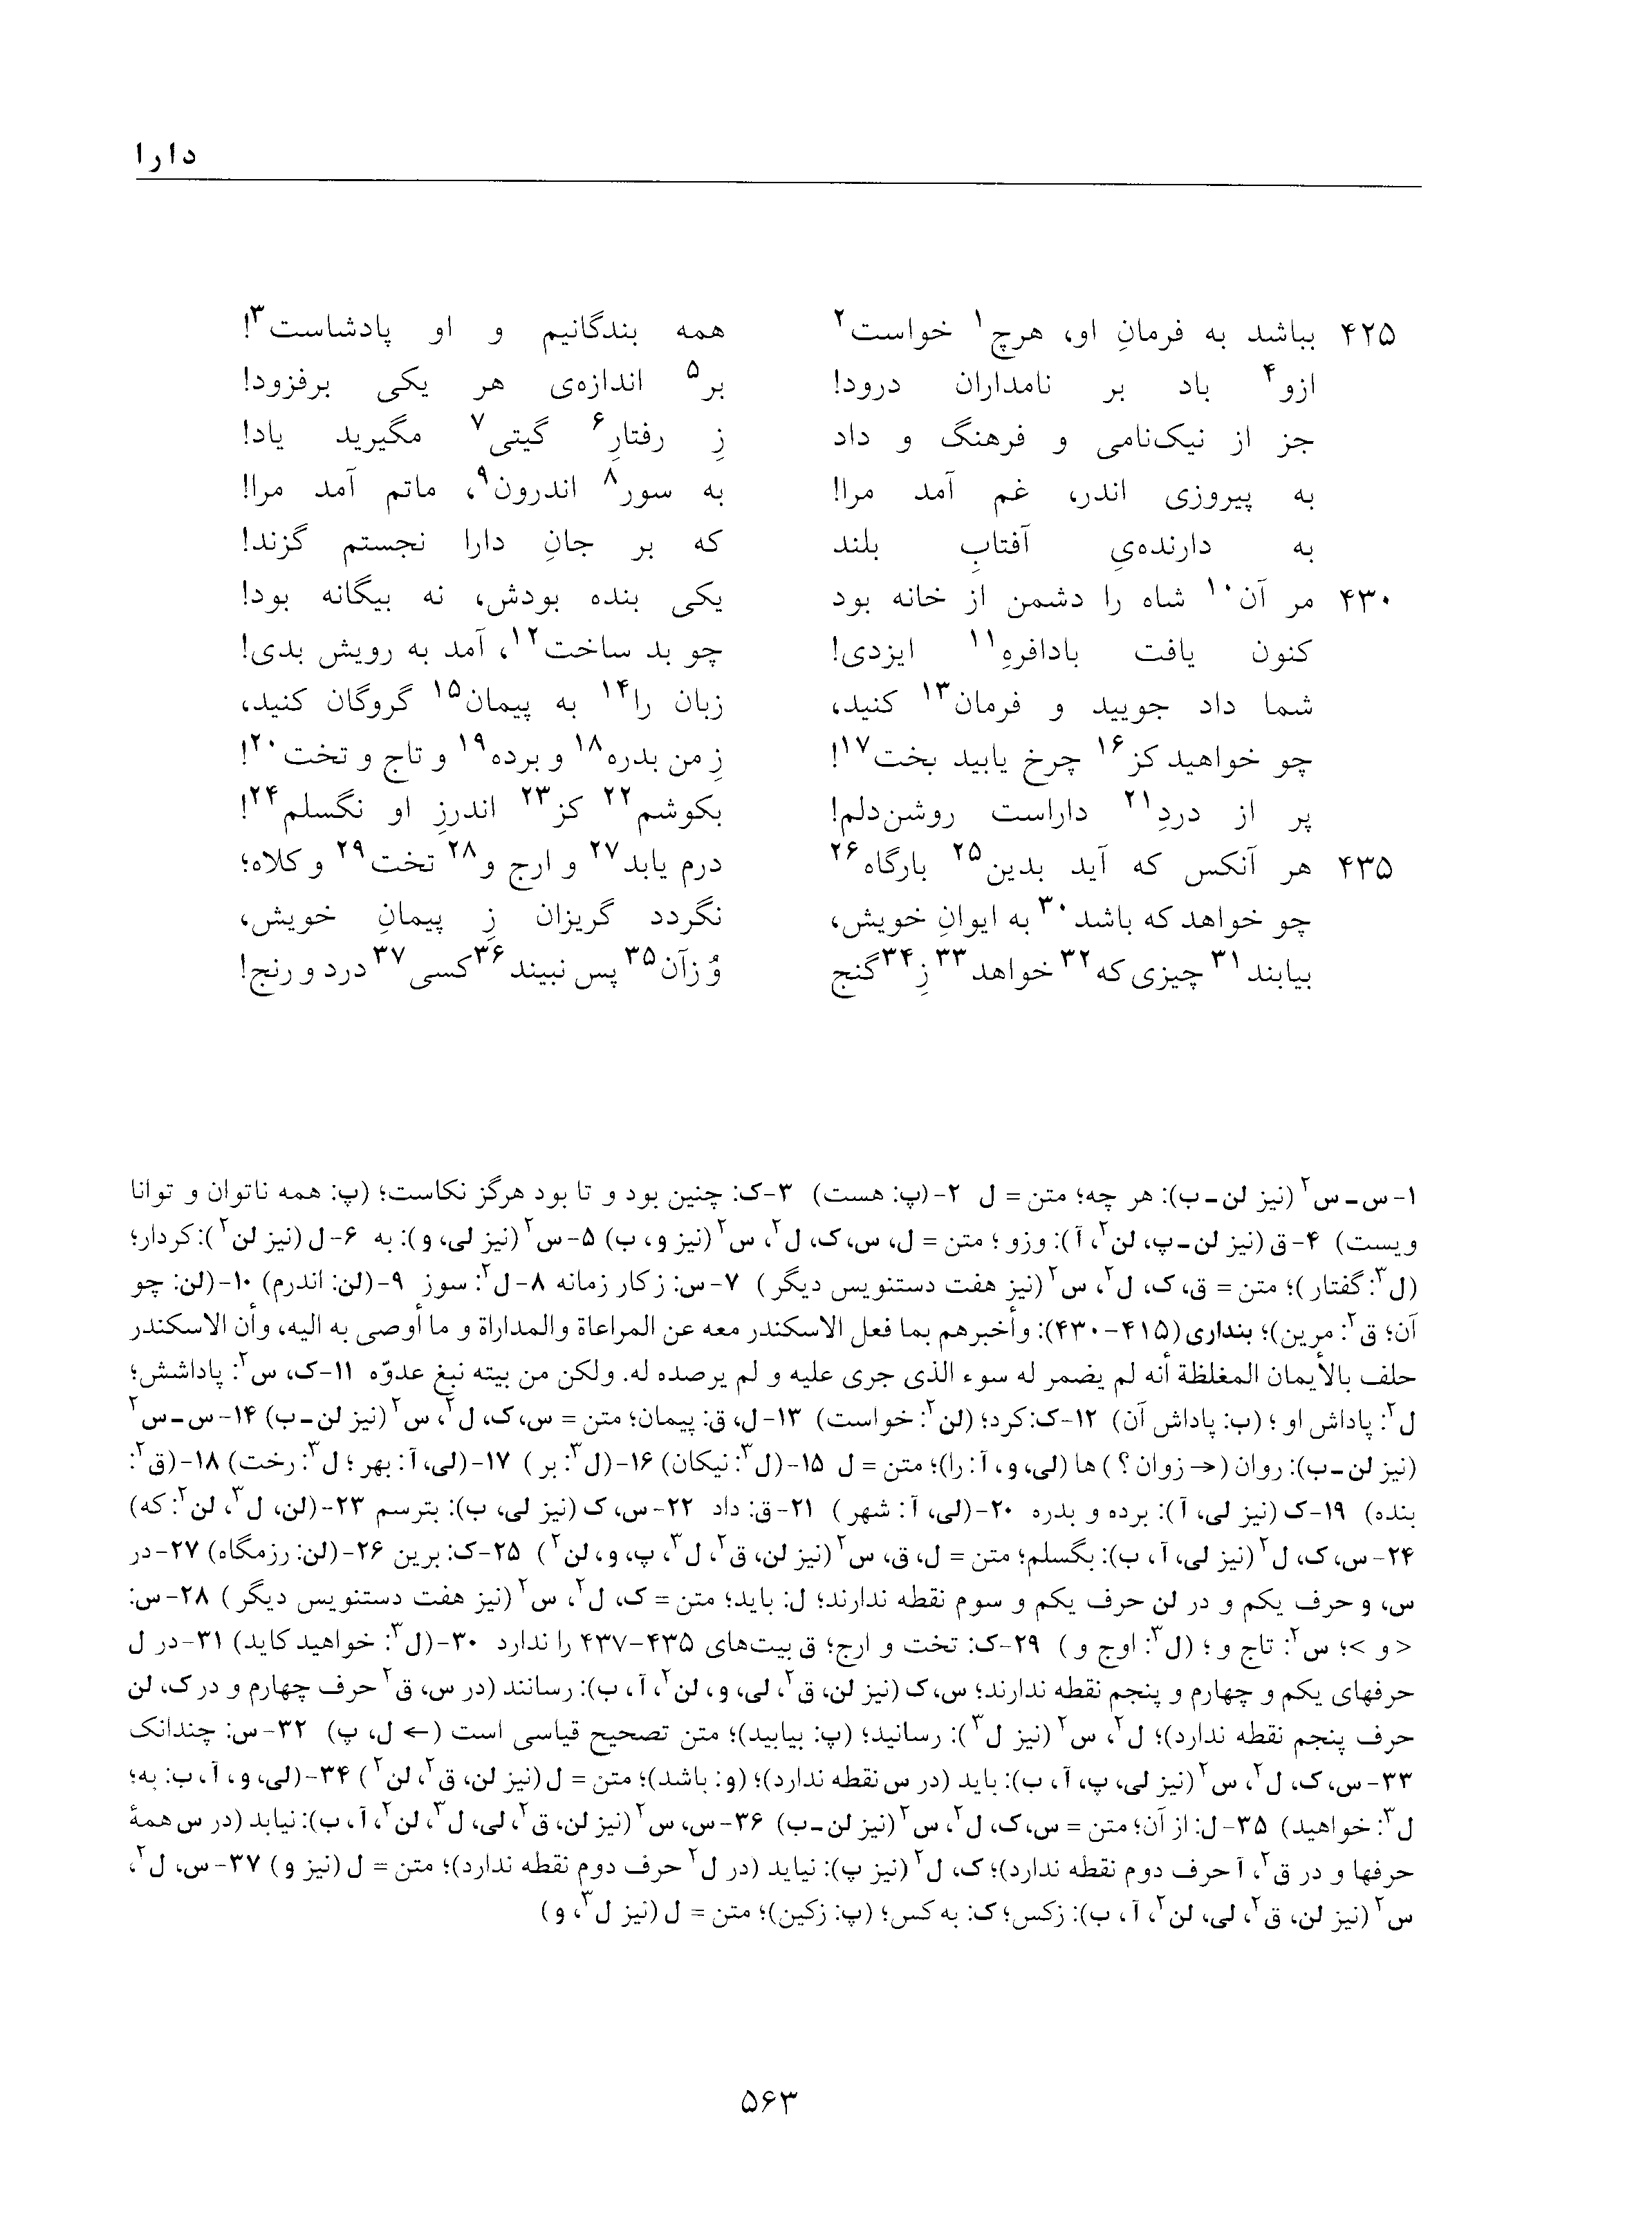 vol. 5, p. 563